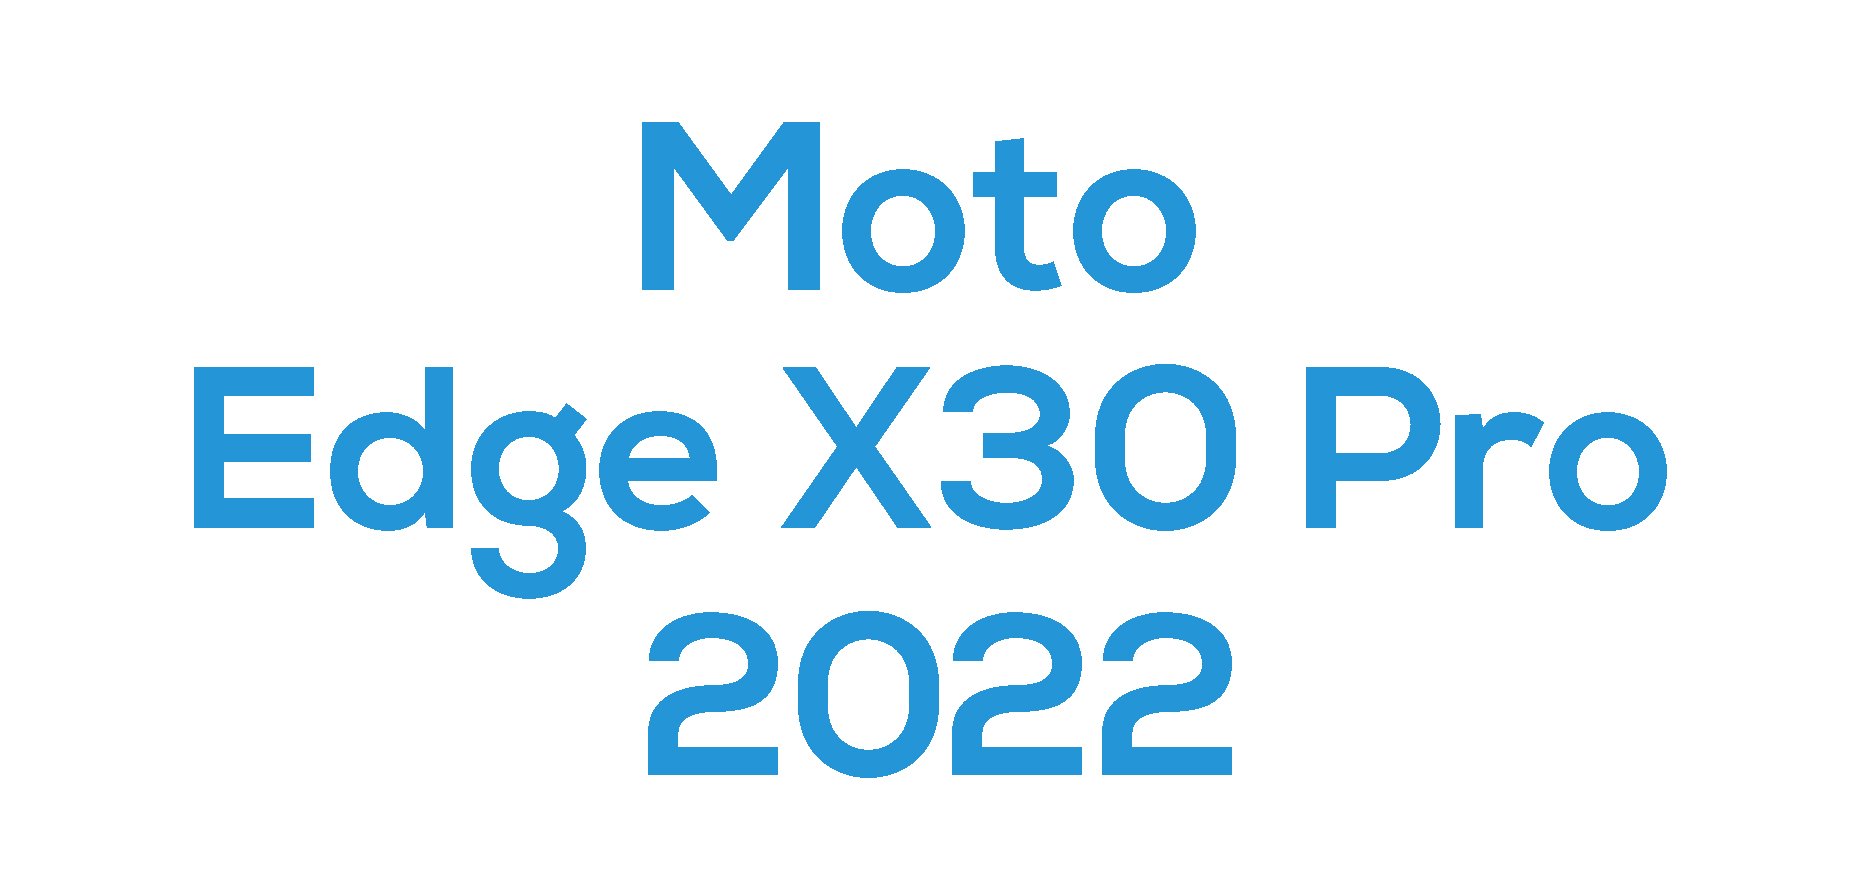 Edge X30 Pro (2022)